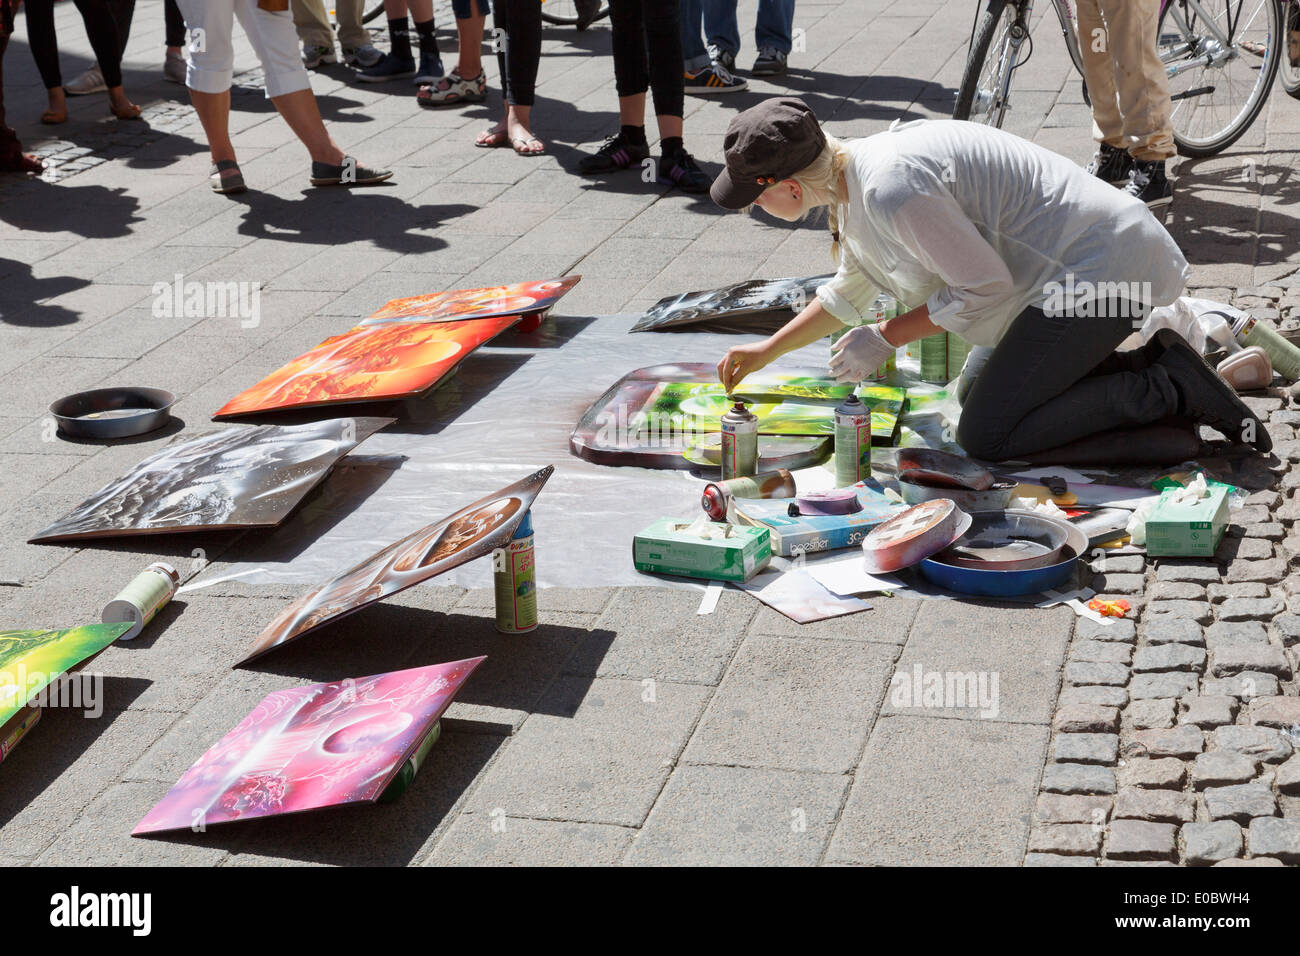 La peinture en aérosol peinture artiste de rue photos de vendre avec un auditoire à Copenhague, Danemark, Scandinavie, l'Europe. Banque D'Images